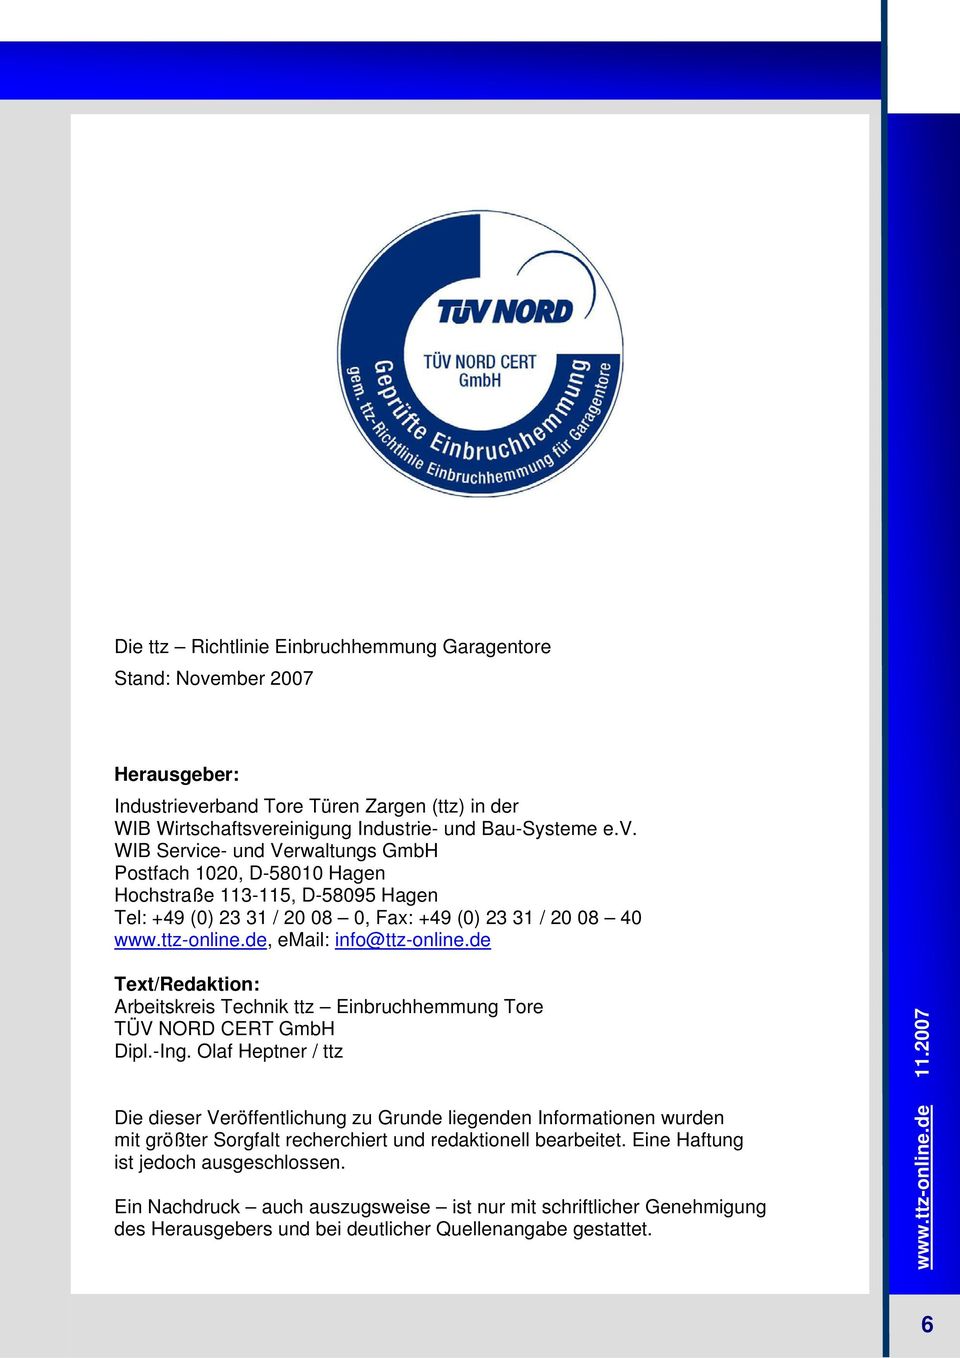 ttz-online.de, email: info@ttz-online.de Text/Redaktion: Arbeitskreis Technik ttz Einbruchhemmung Tore TÜV NORD CERT GmbH Dipl.-Ing.